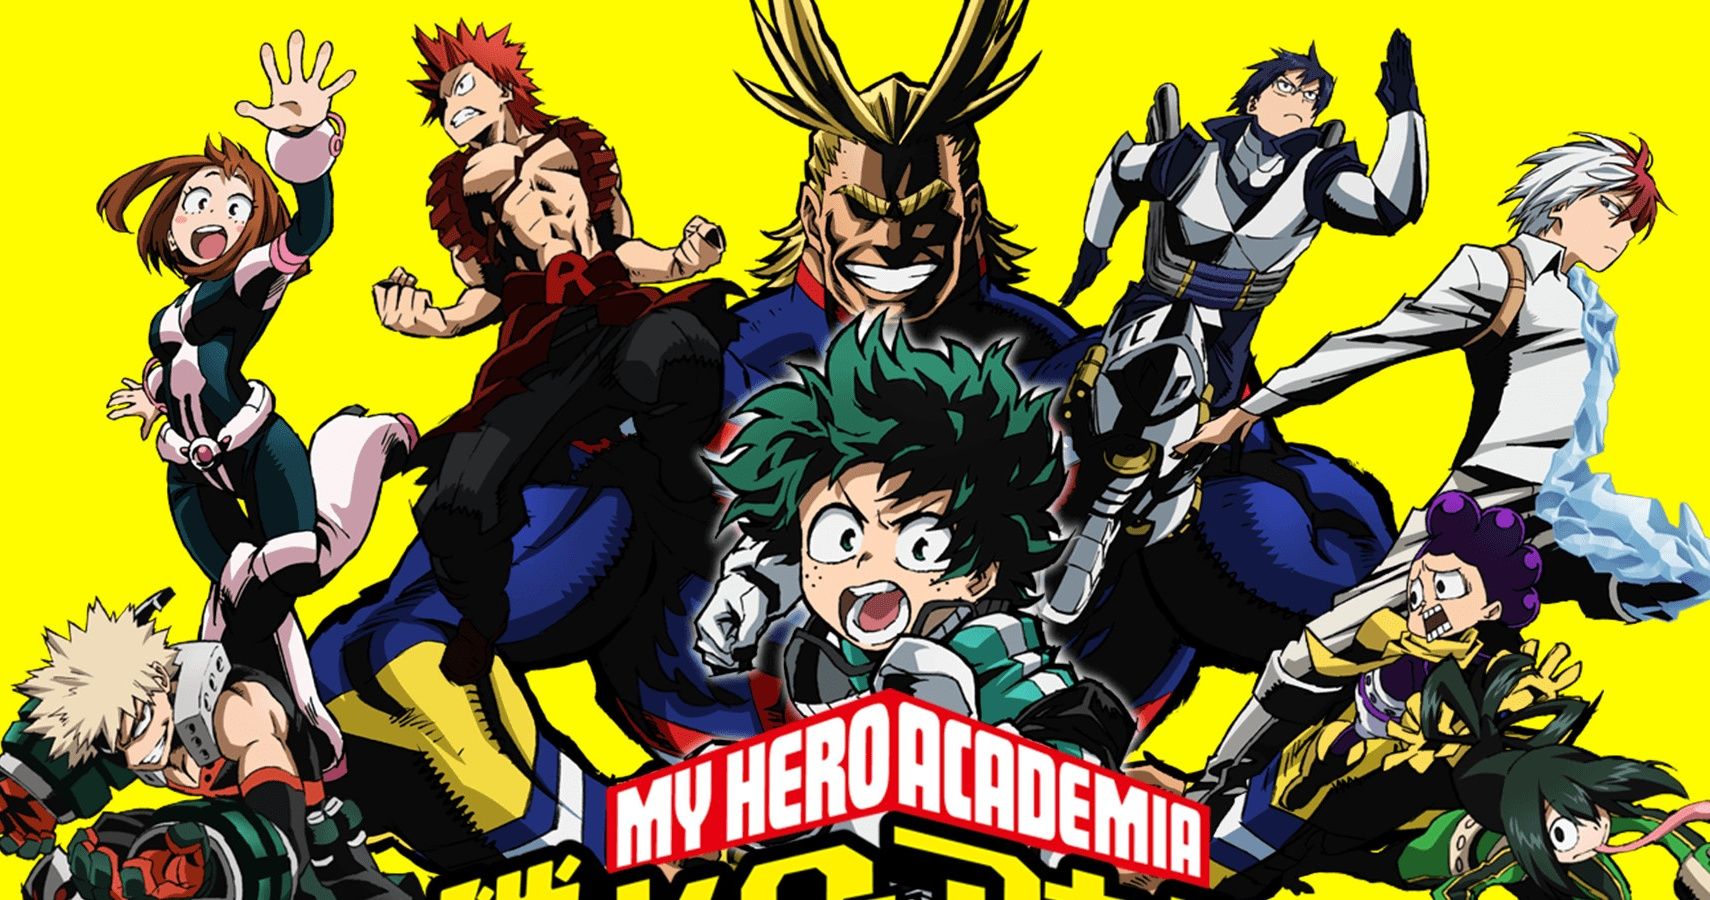 My Hero Academia Characters Logos